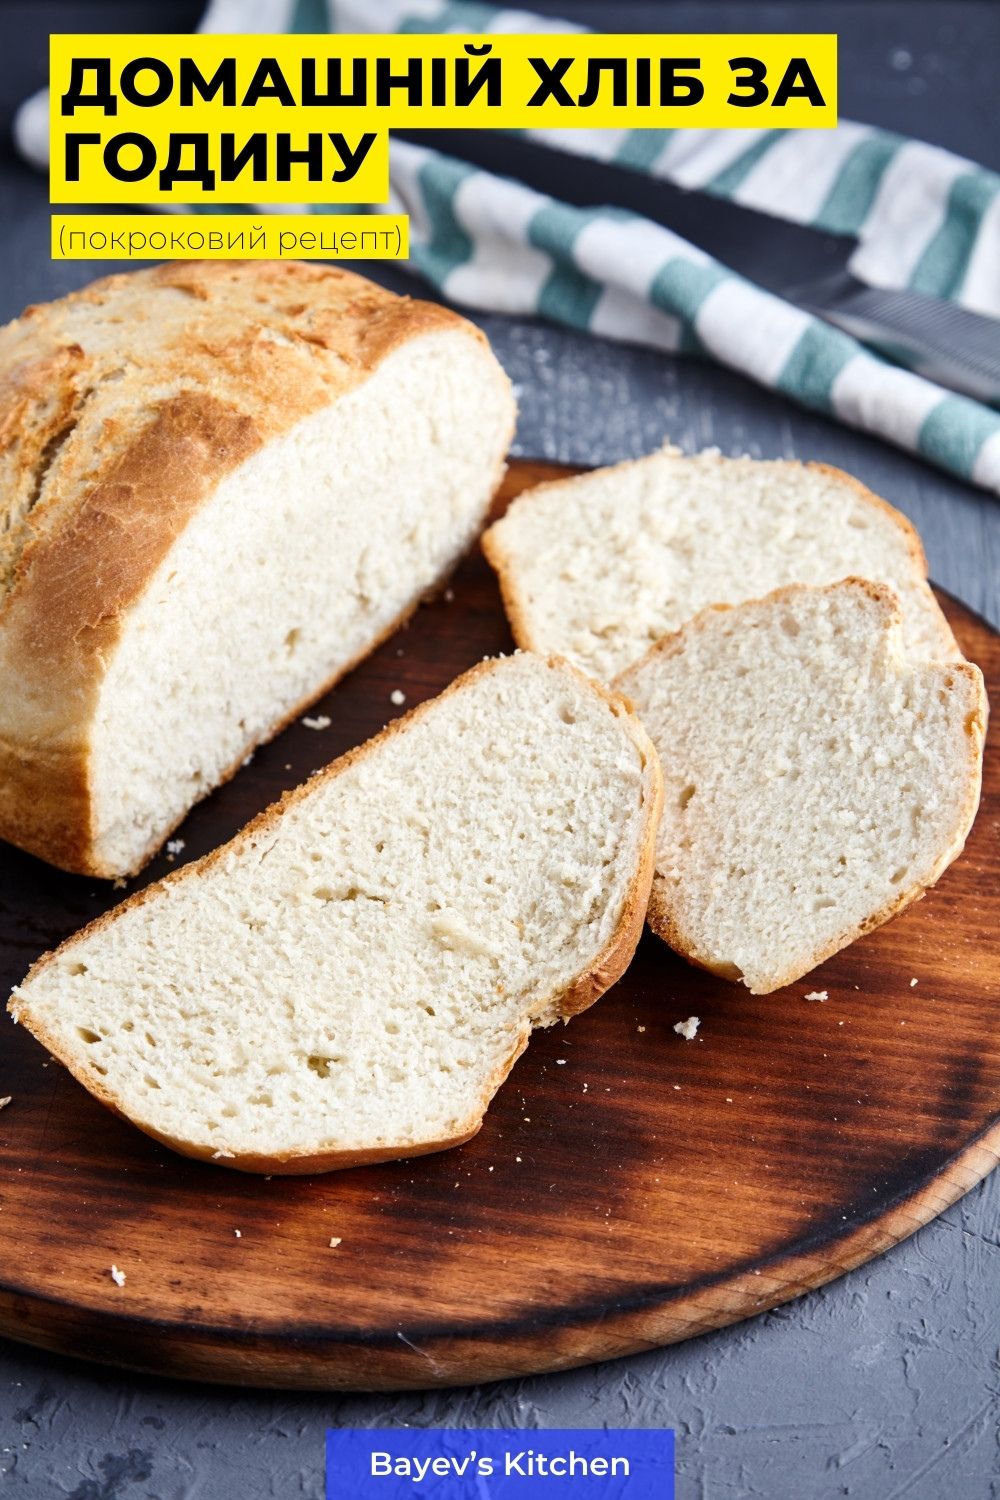 Приготування хліба - це не обов'язково довго і нудно. Ось вам рецепт, за яким ви отримаєте свіжий, ароматний домашній хліб за лічені хвилини. Ну гаразд, не за хвилини, а за годину з невеликим, але це не скасовує простоти рецепту.